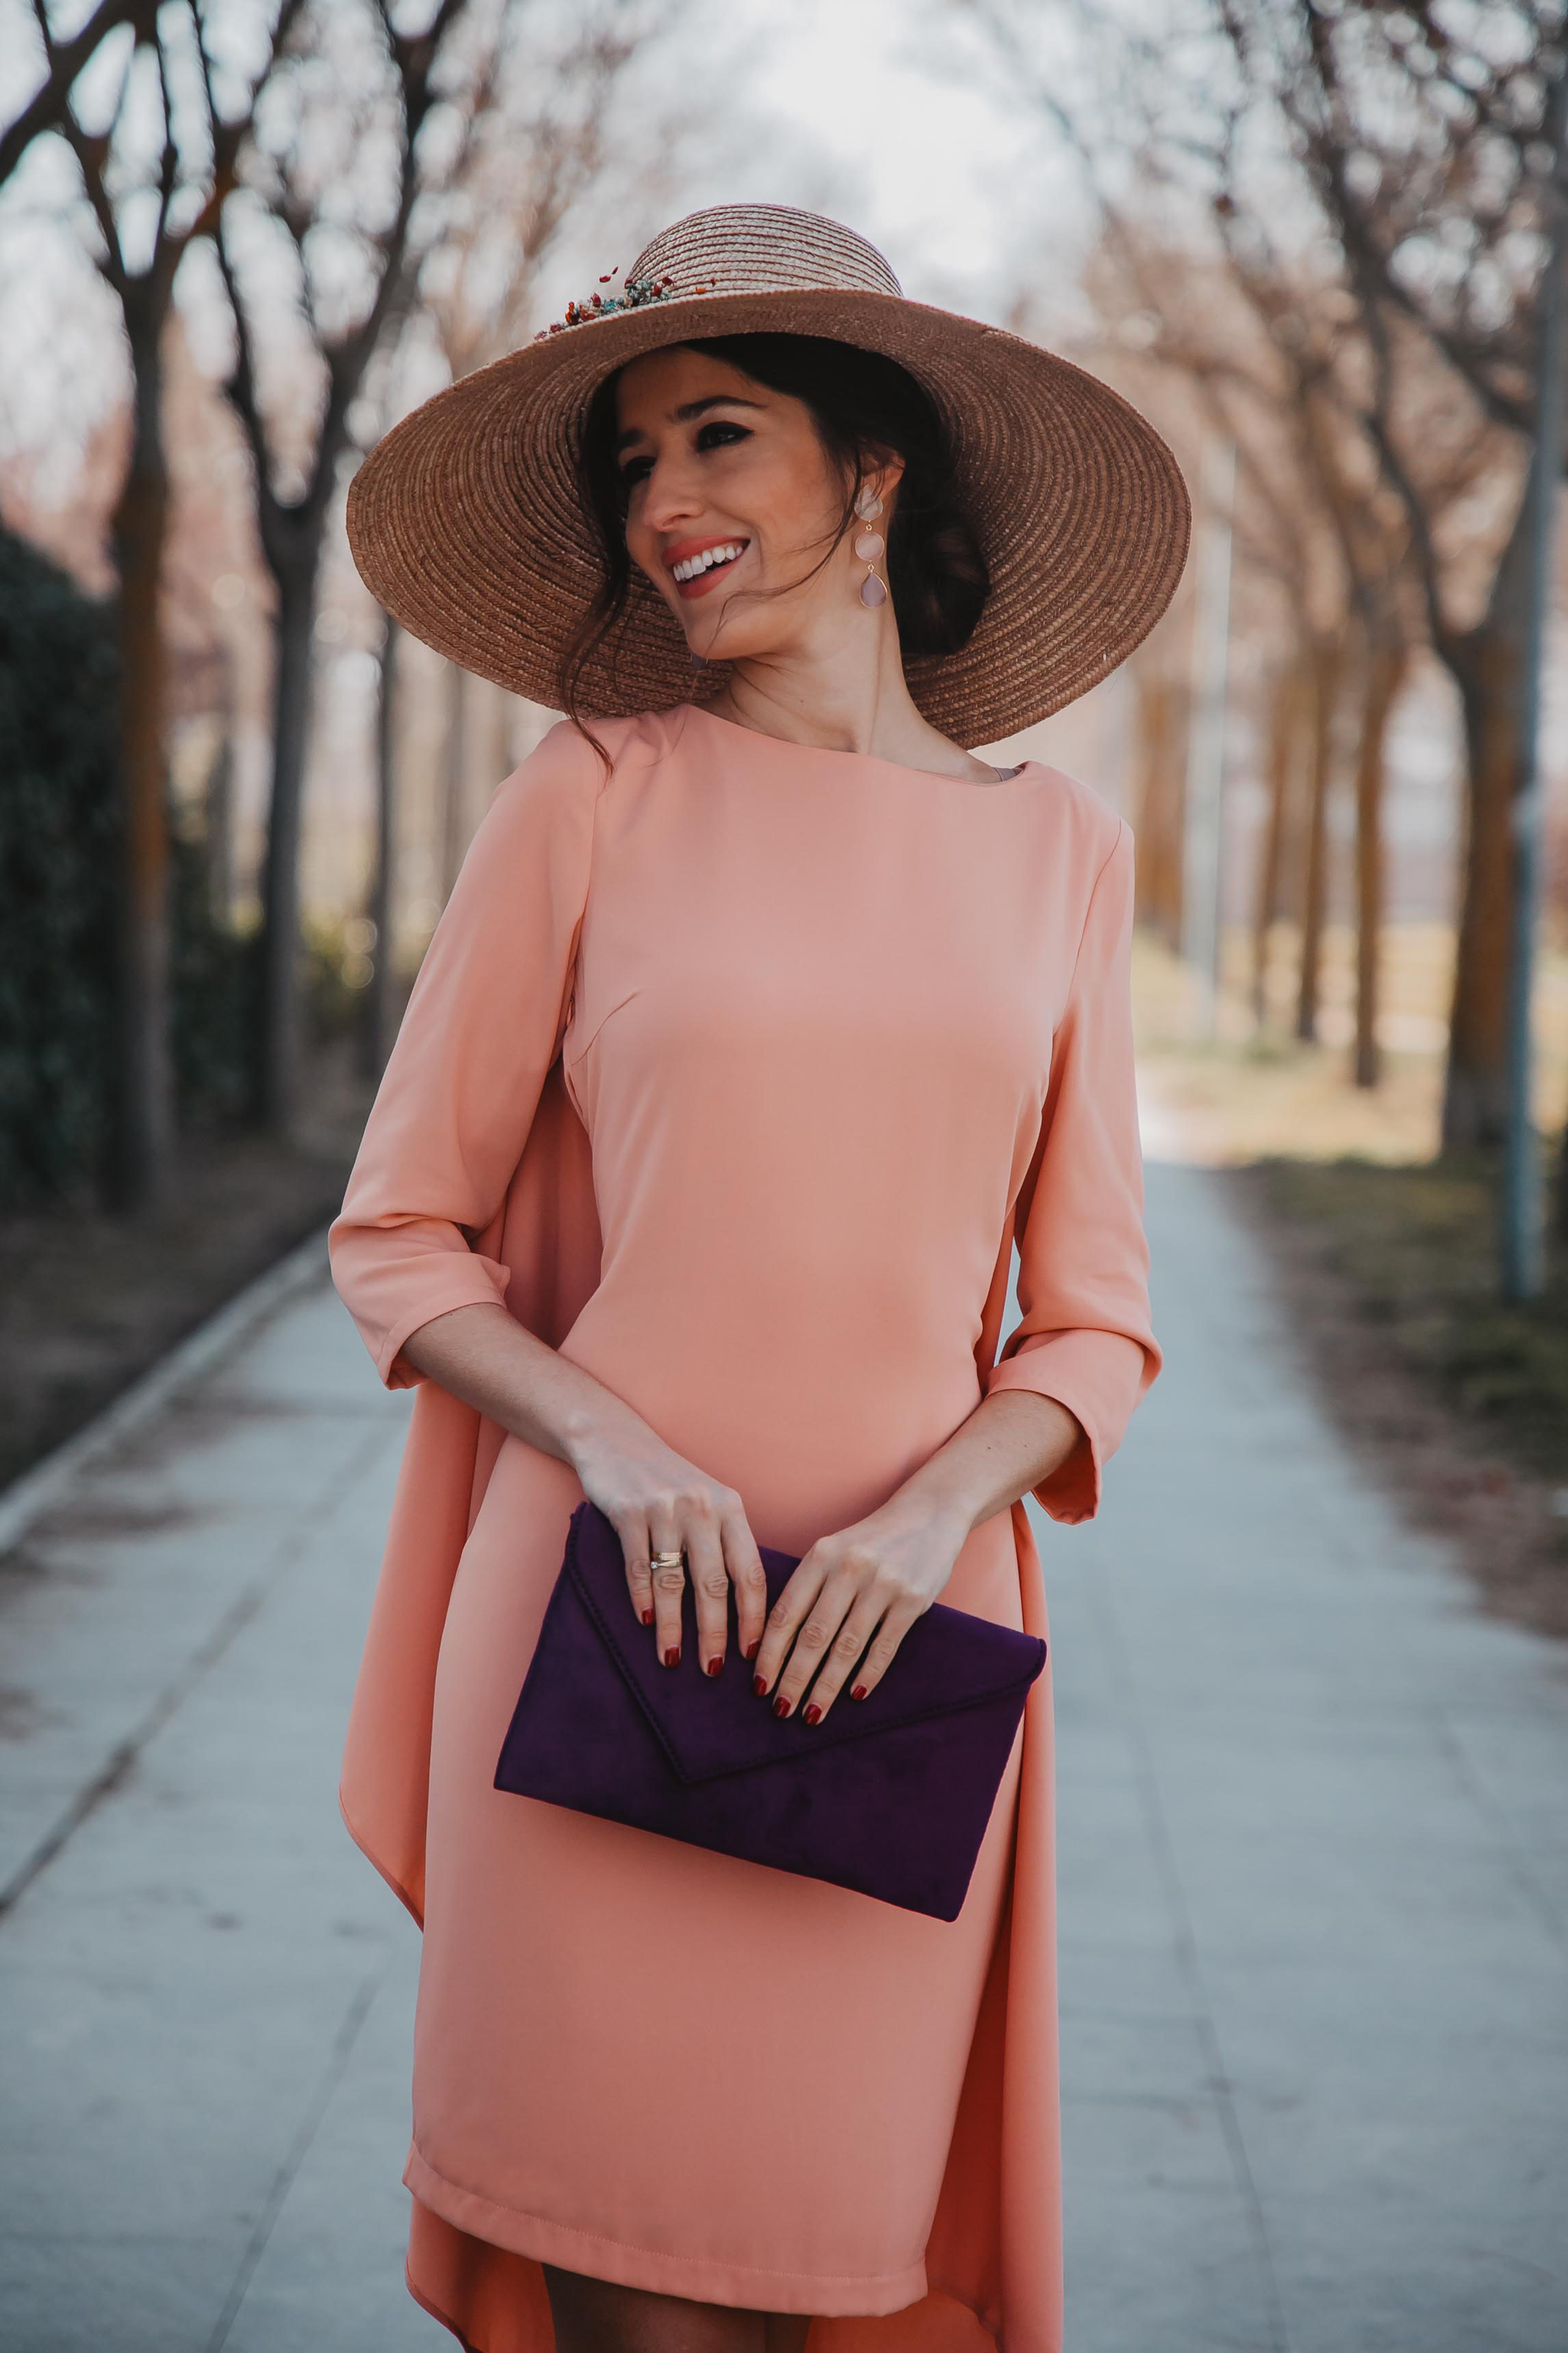 Look invitada boda 2019 pamela pendientes rosa espalda